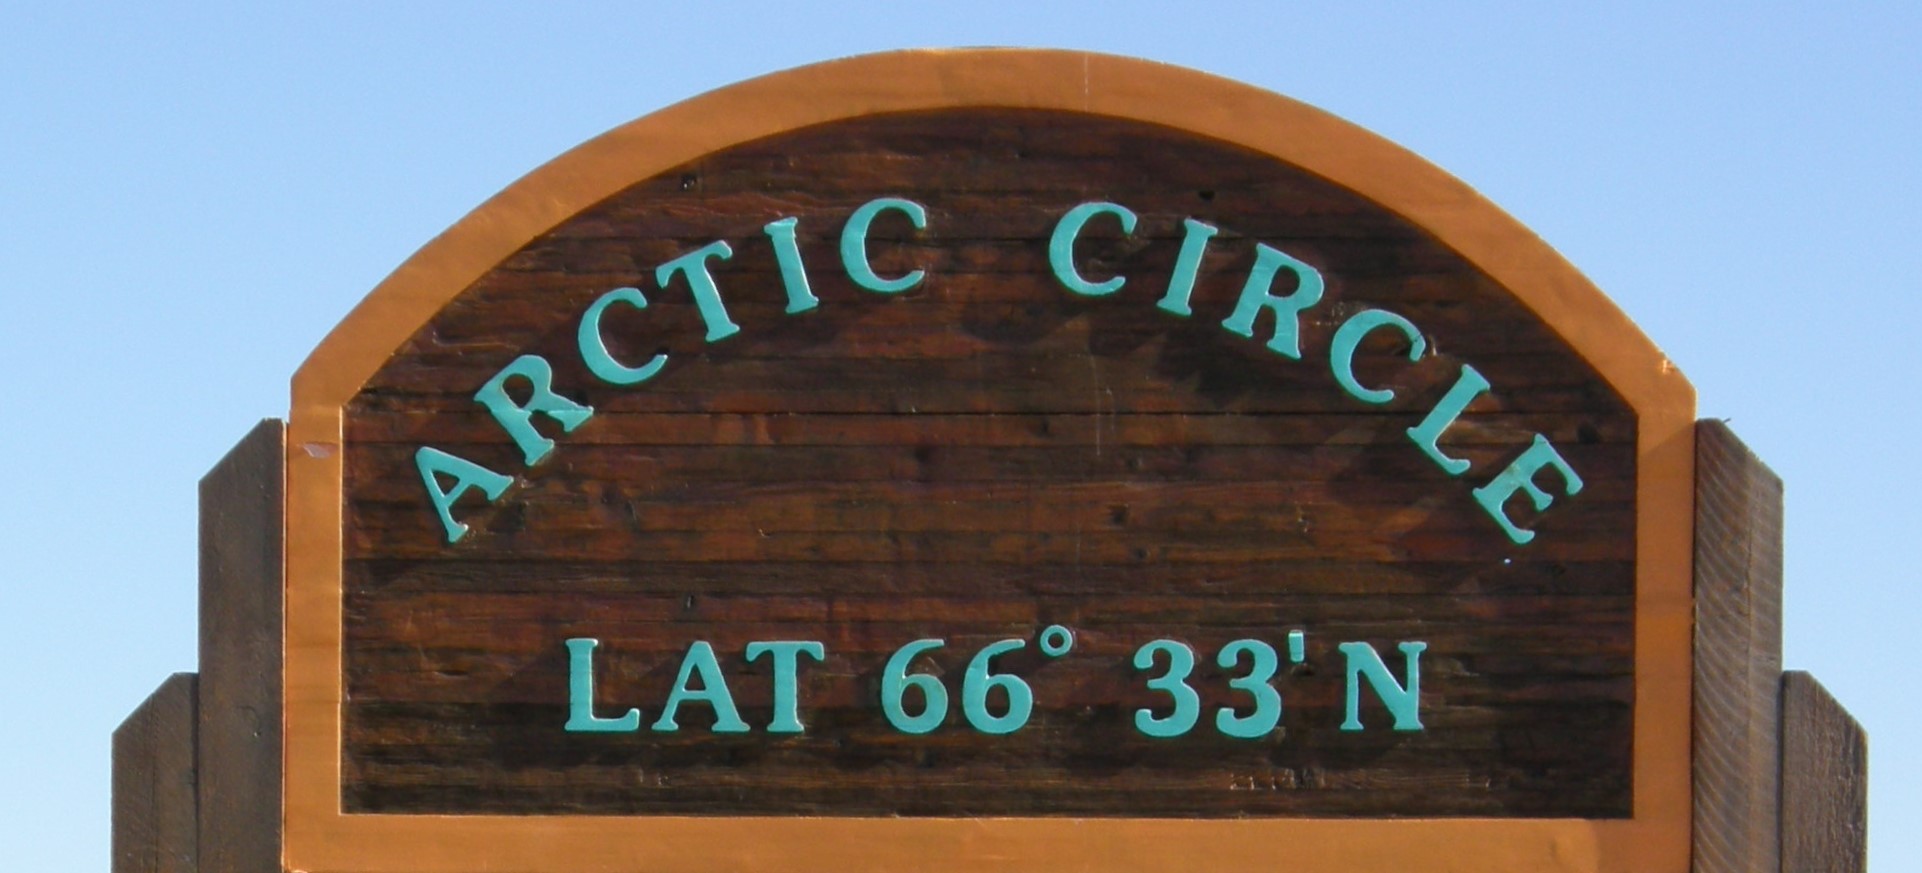 artic circle